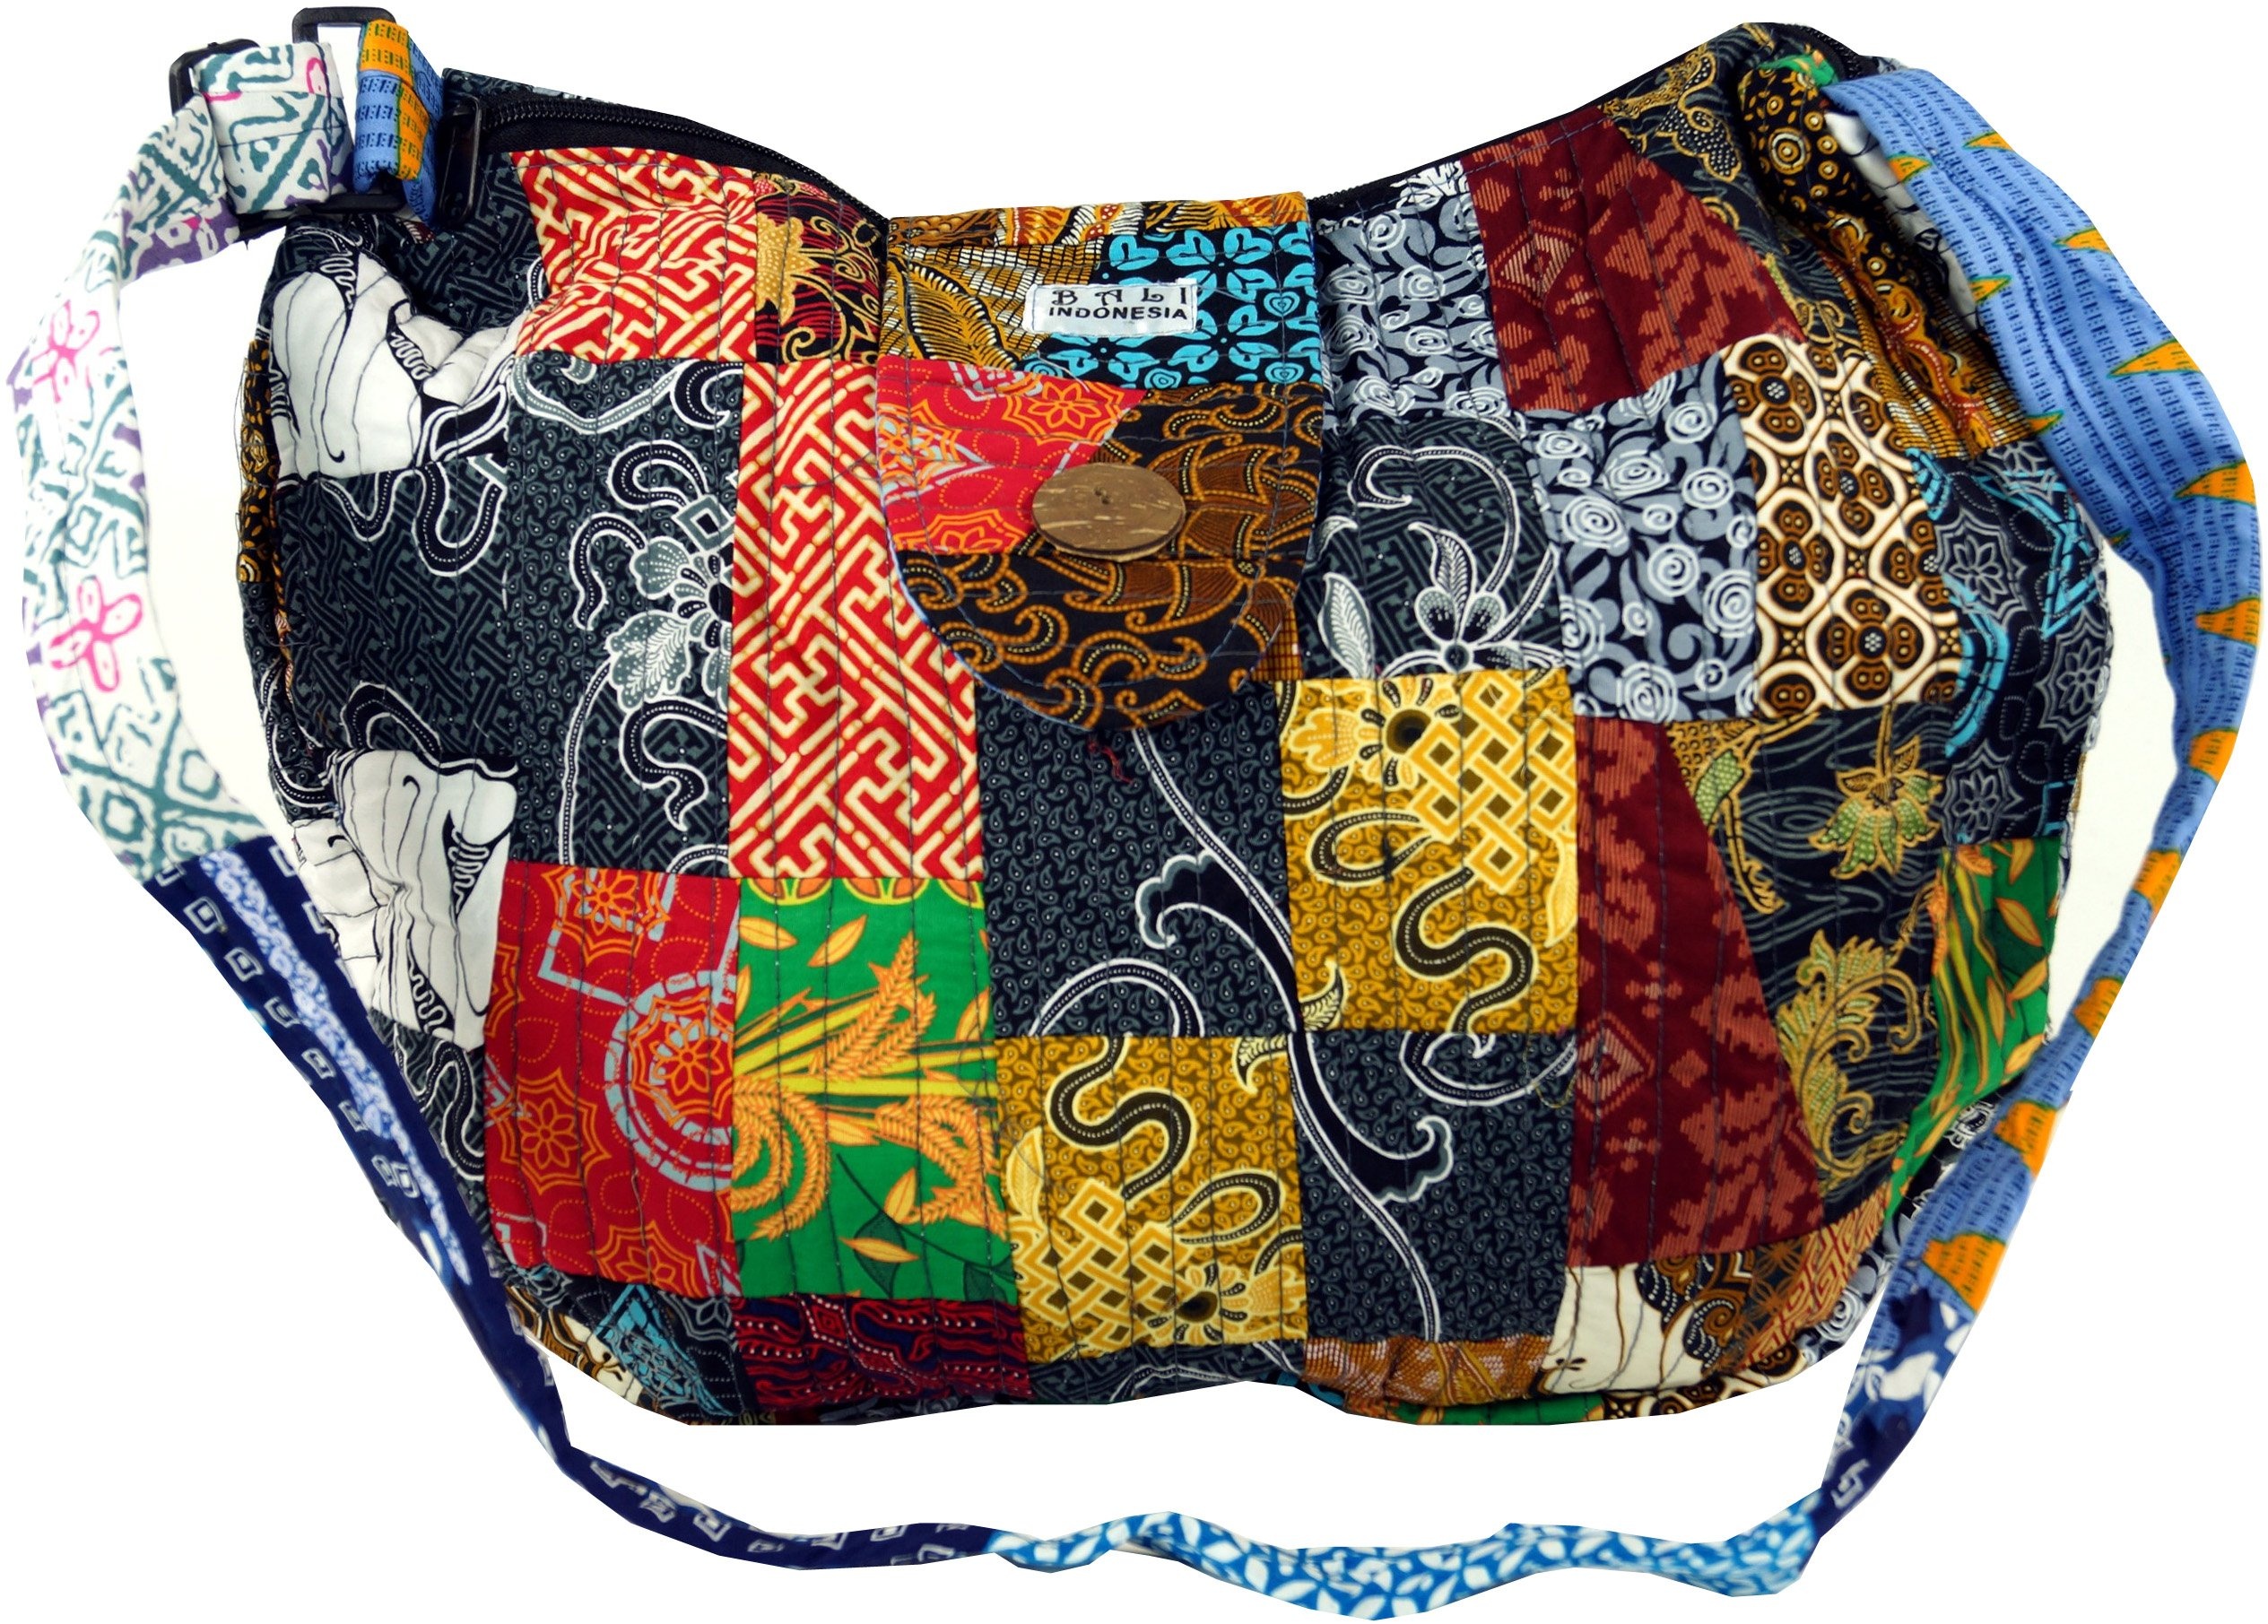 GURU SHOP Patchworktasche Bali, Herren/Damen, Mehrfarbig, Baumwolle, Size:One Size, 35x40x7 cm, Alternative Umhängetasche, Handtasche aus Stoff - Einheitsgröße